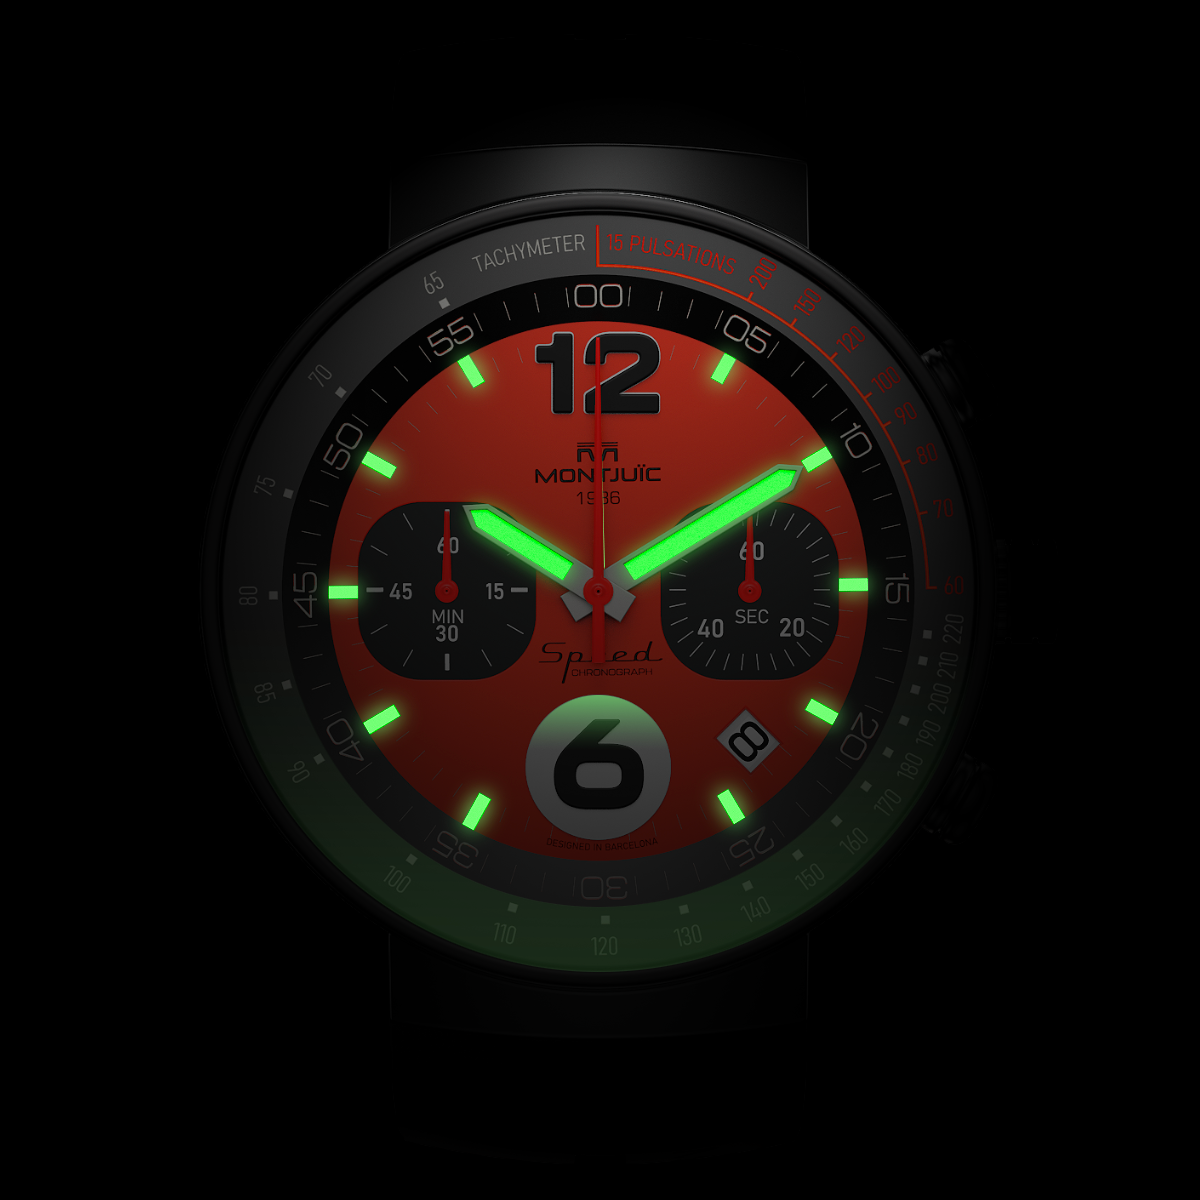 Reloj Montjuic Speed Chrono Negro con esfera Roja